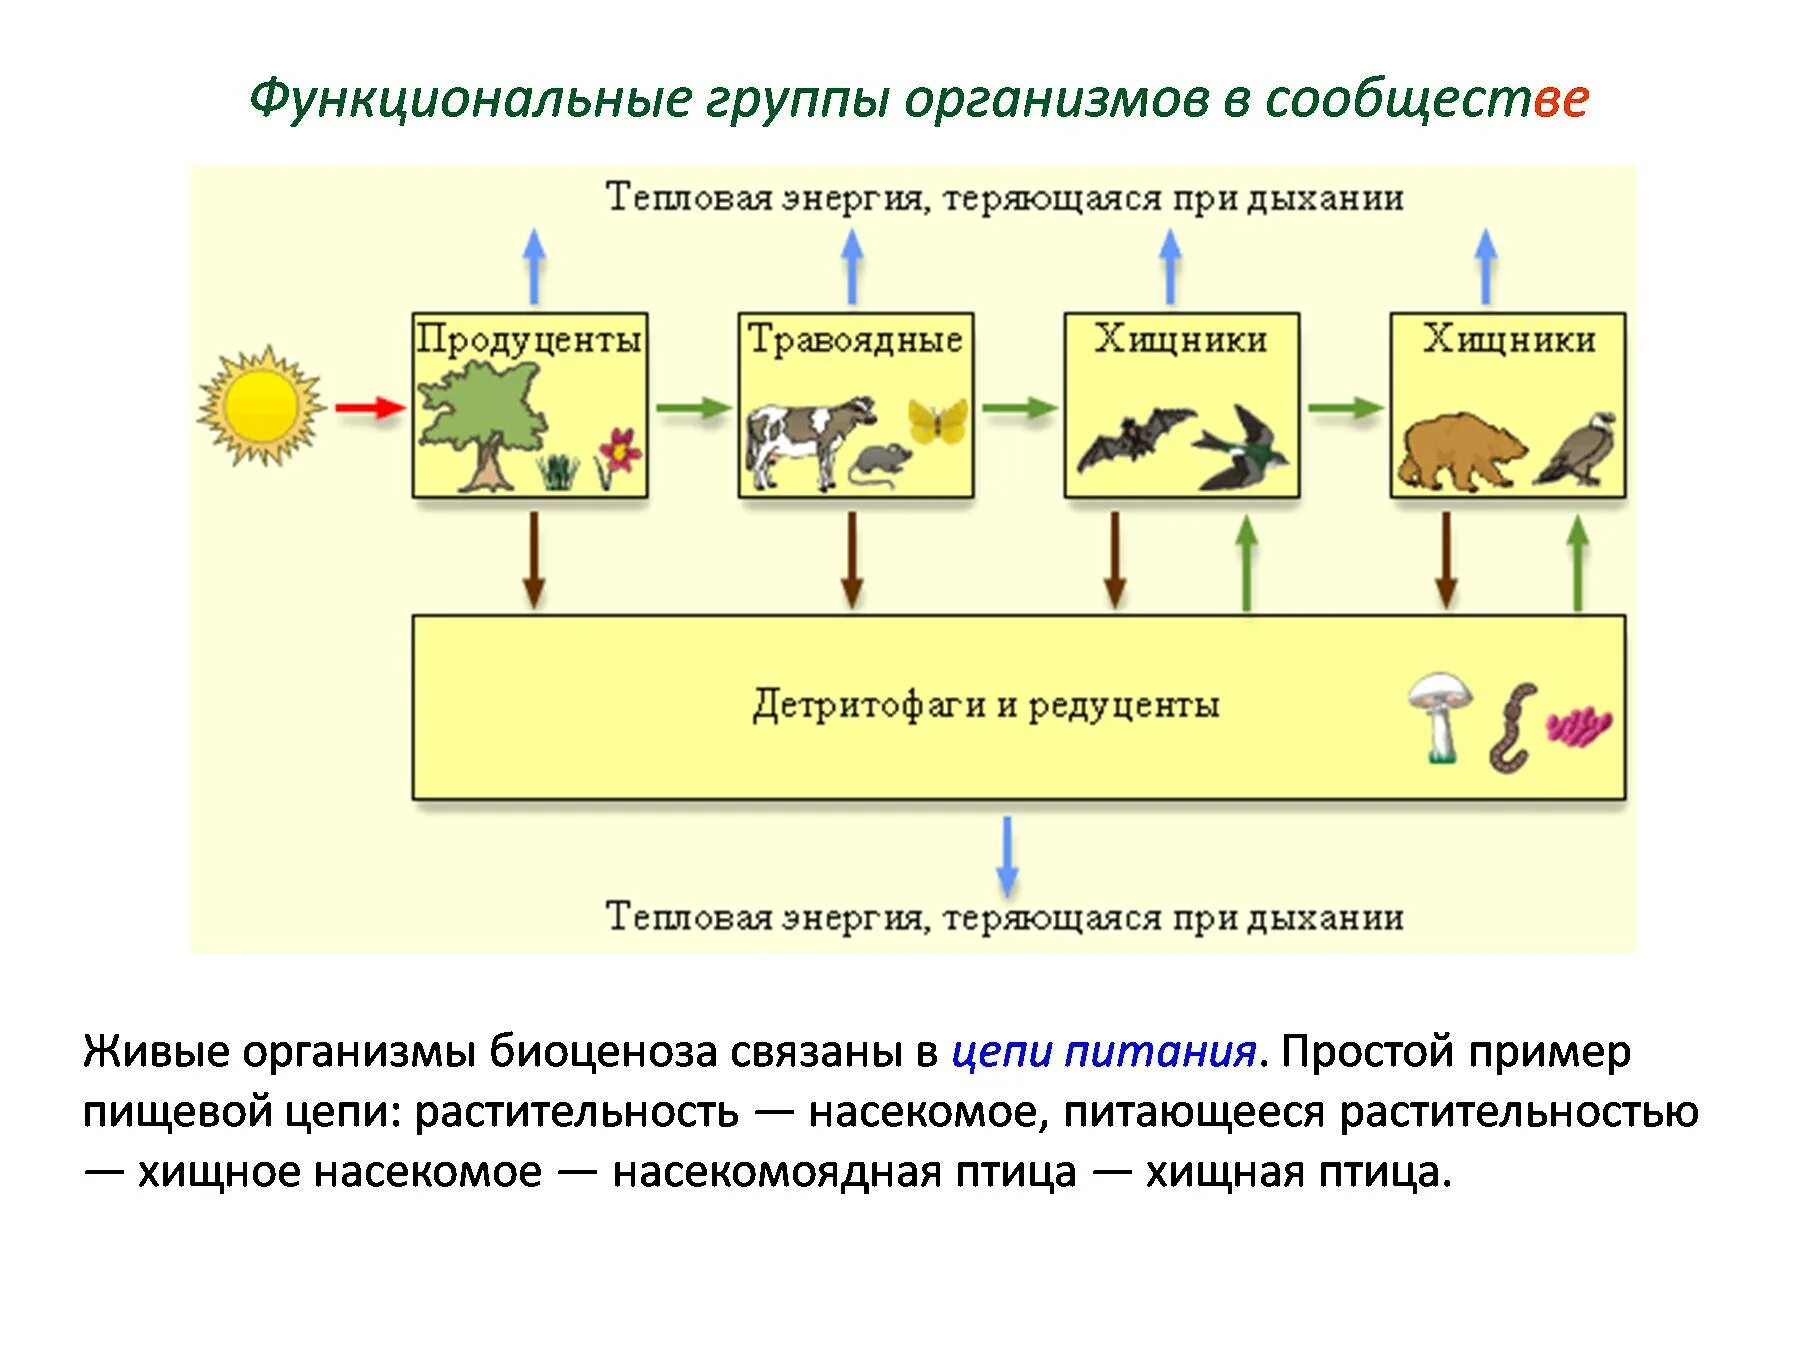 Цепь питания продуценты консументы редуценты. Пищевые связи естественной экосистемы. Функциональные группы организмов в сообществе. Группы организмов в экосистеме.